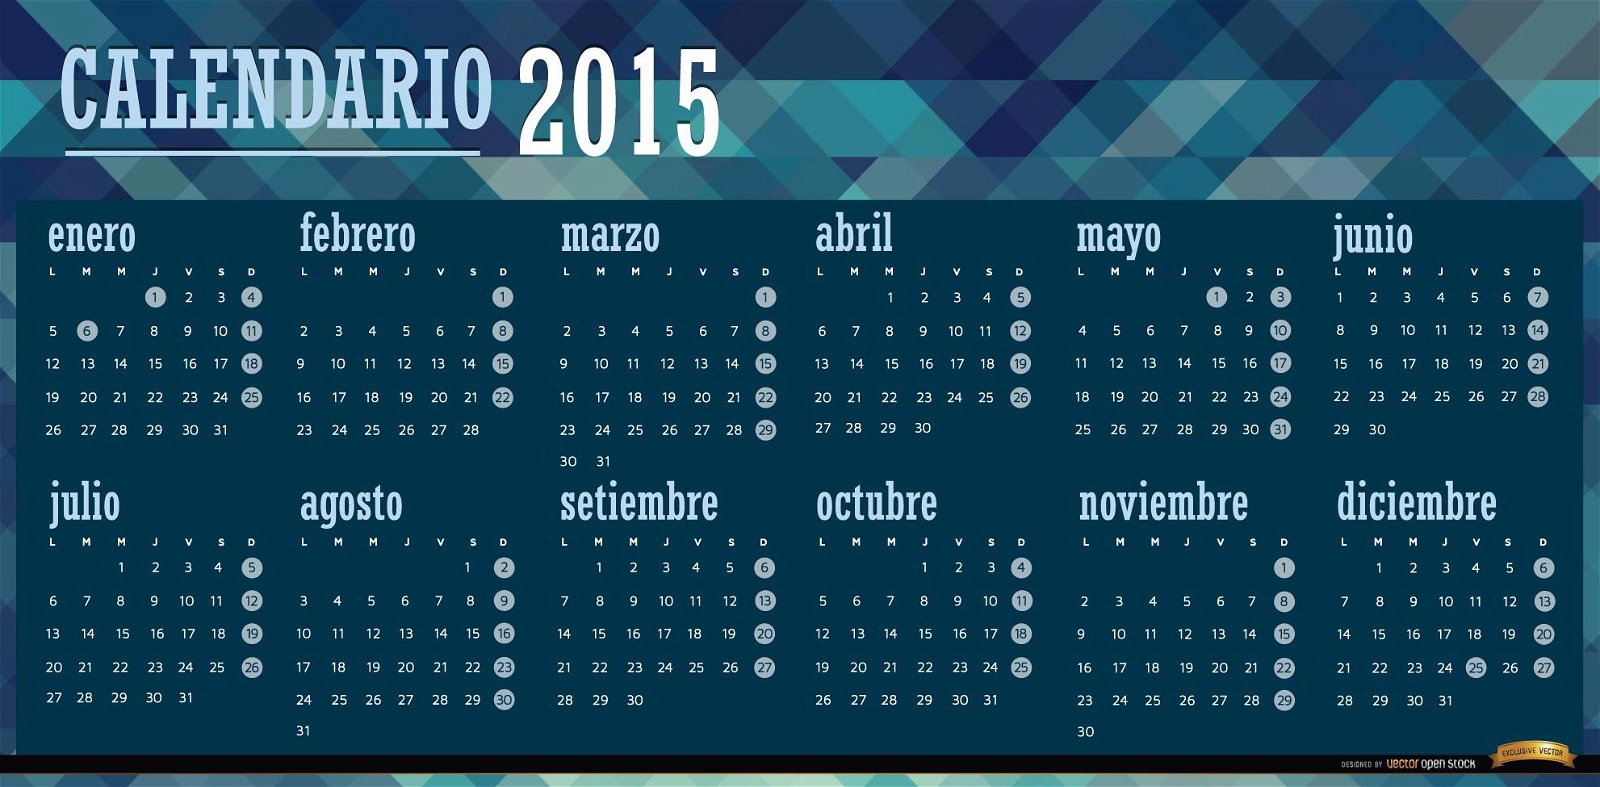 2015 calendário poligonal azul espanhol